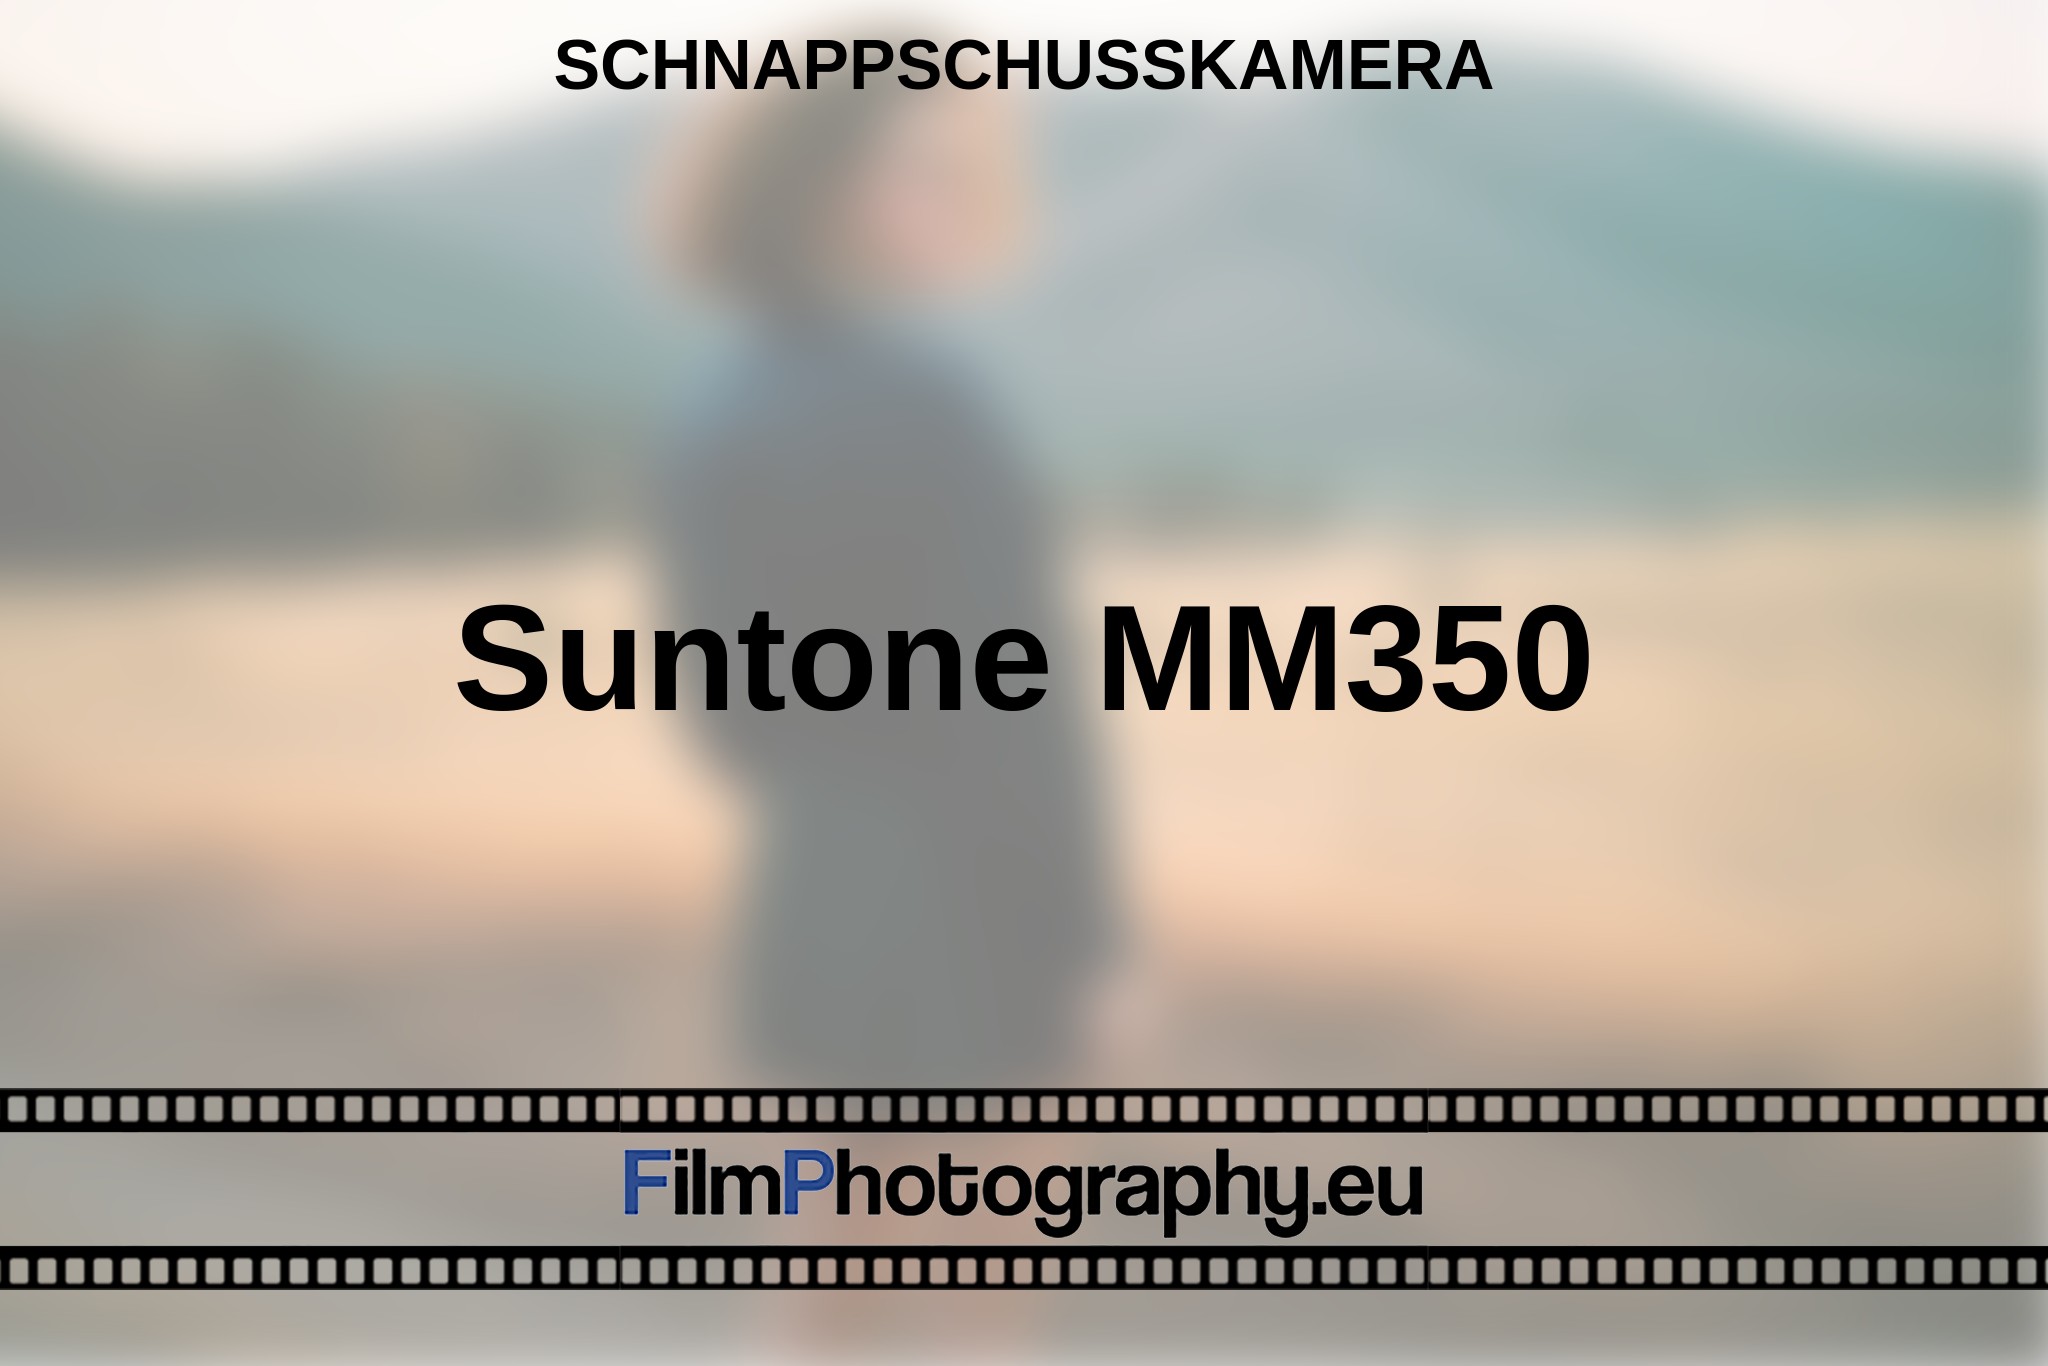 suntone-mm350-schnappschusskamera-bnv.jpg